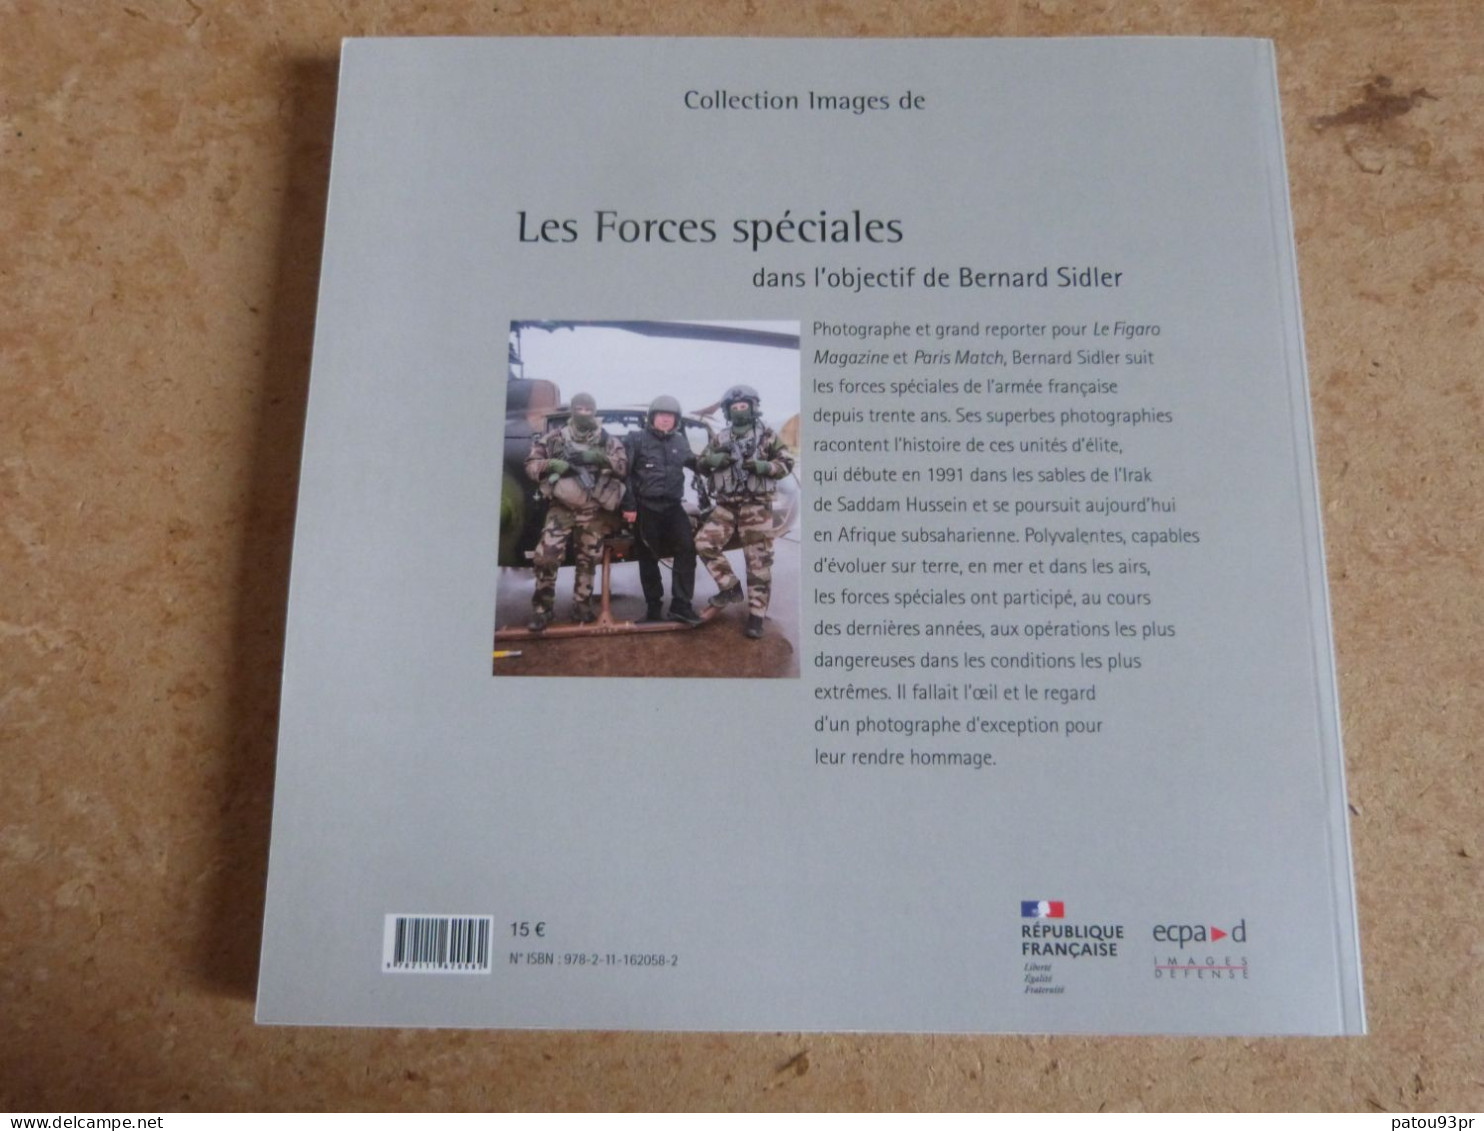 Lot De 3 Livres Militaires Sur Armée Française (légion étrangère, Commandos Marine Et Forces Spéciales) - Francese